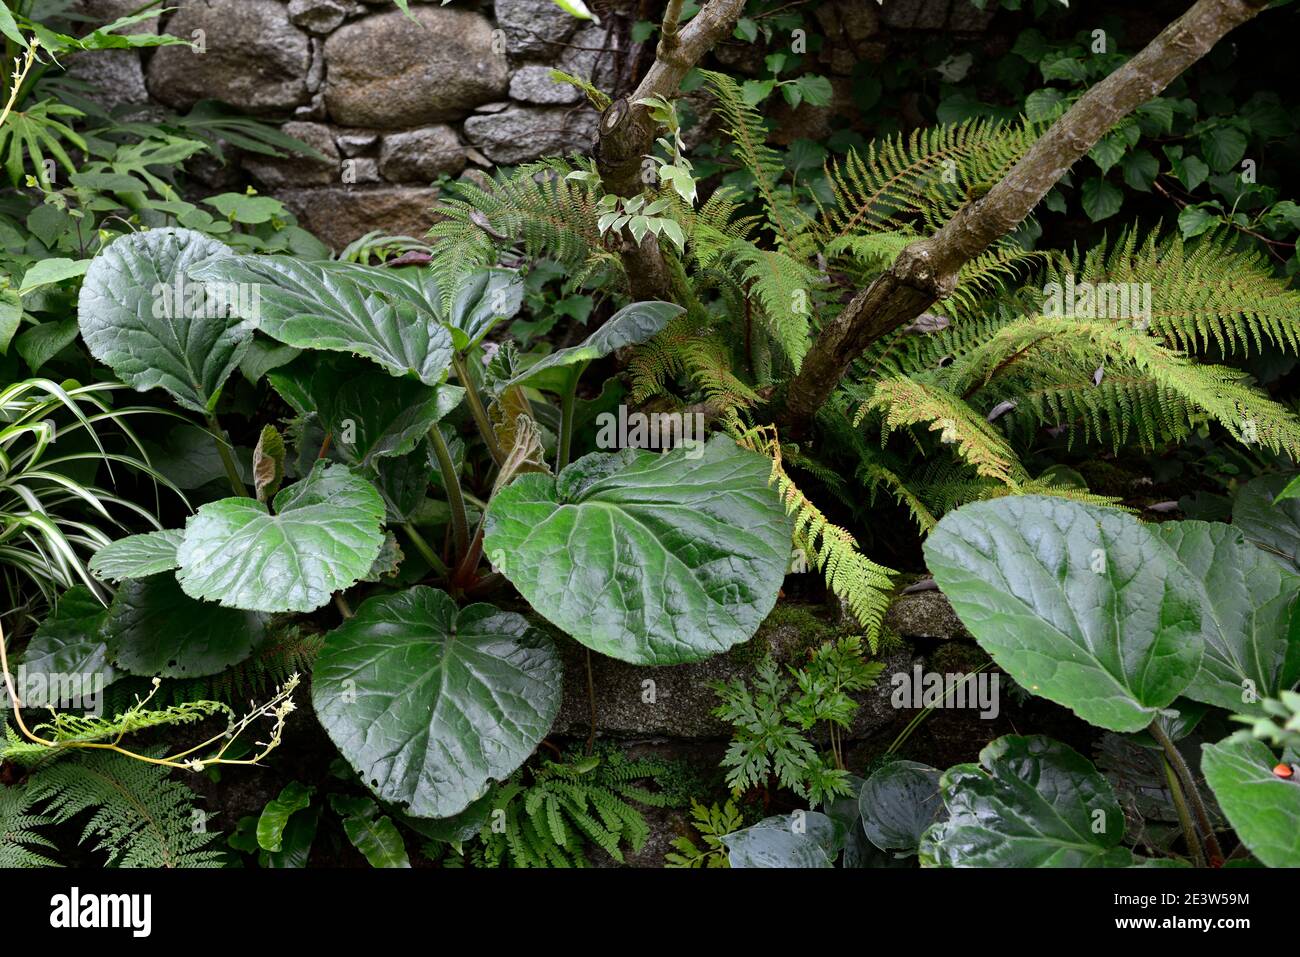 Bergenia ciliata Wilton,fern,ferns,leaves,foliage,shady,shaded,walled garden,corner,stone wall,RM Floral Stock Photo